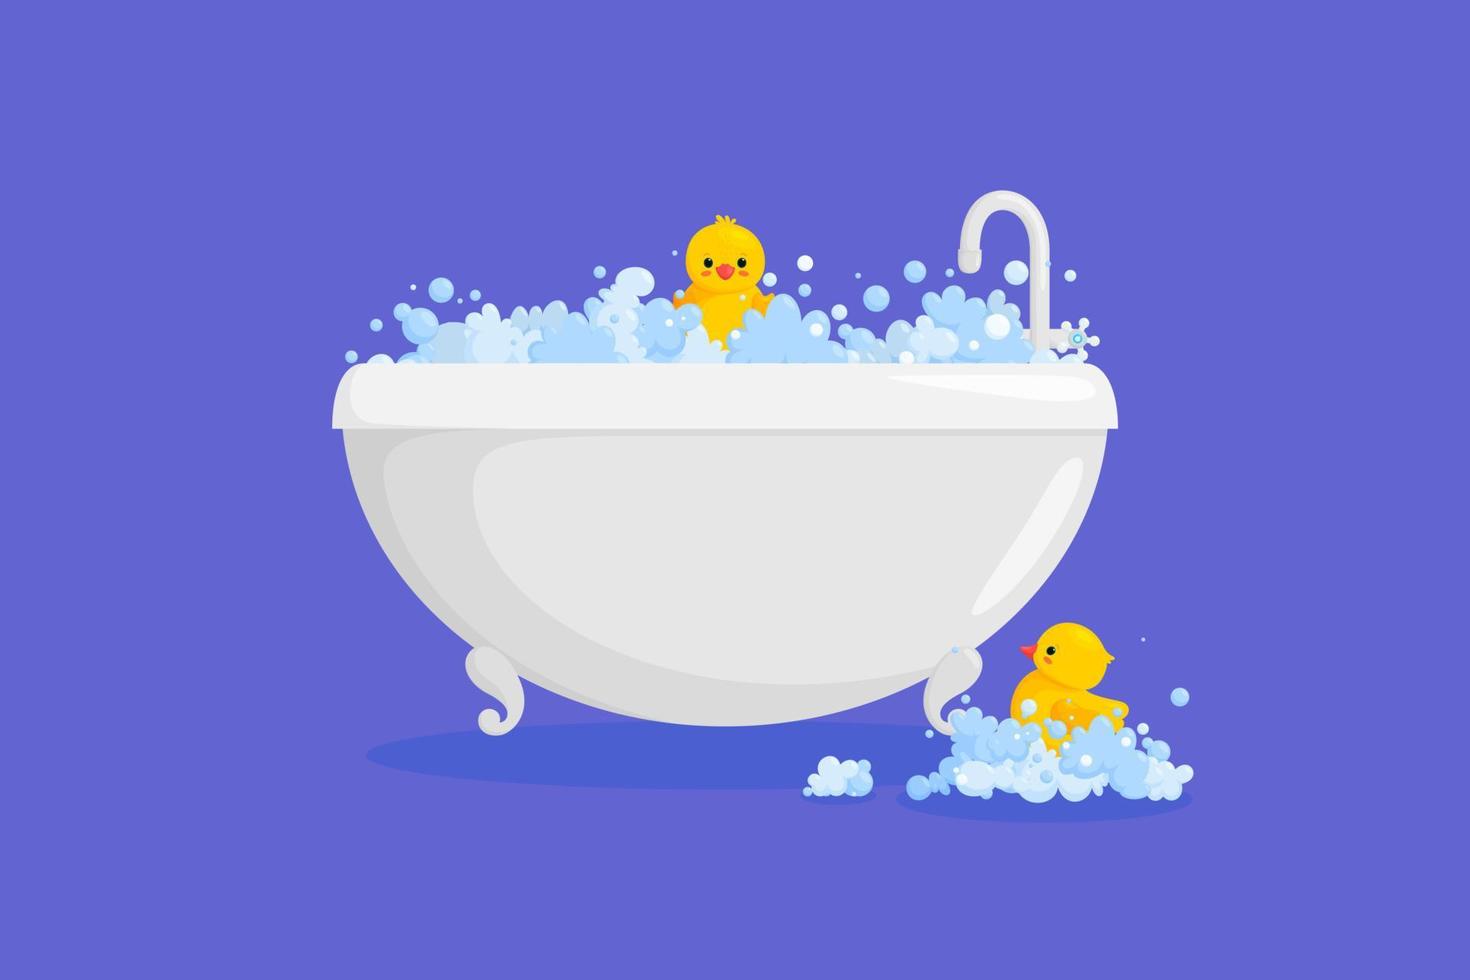 baignoire avec canard en caoutchouc dans la mousse. canard jaune en bulles et mousse isolée sur fond violet. illustration vectorielle vecteur